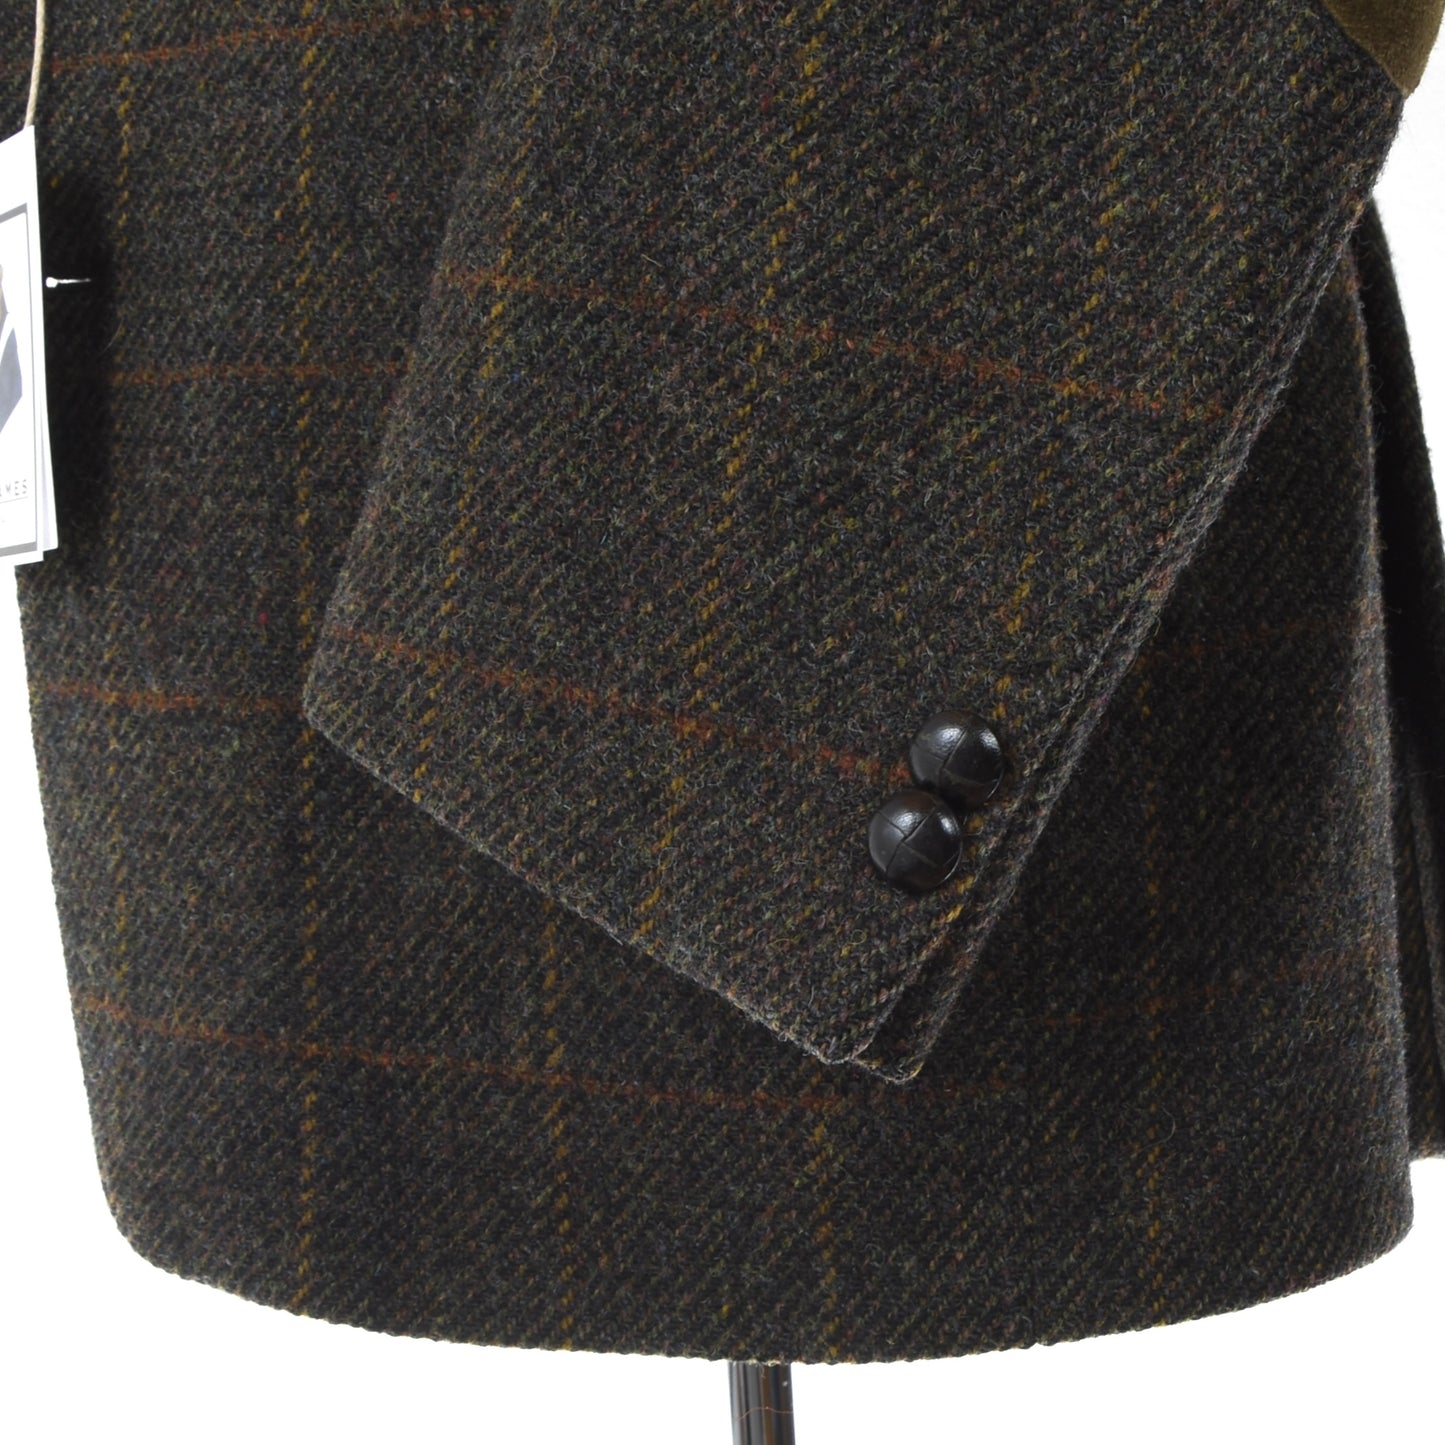 Odermark Harris Tweed Jacket Chest ca. 56cm